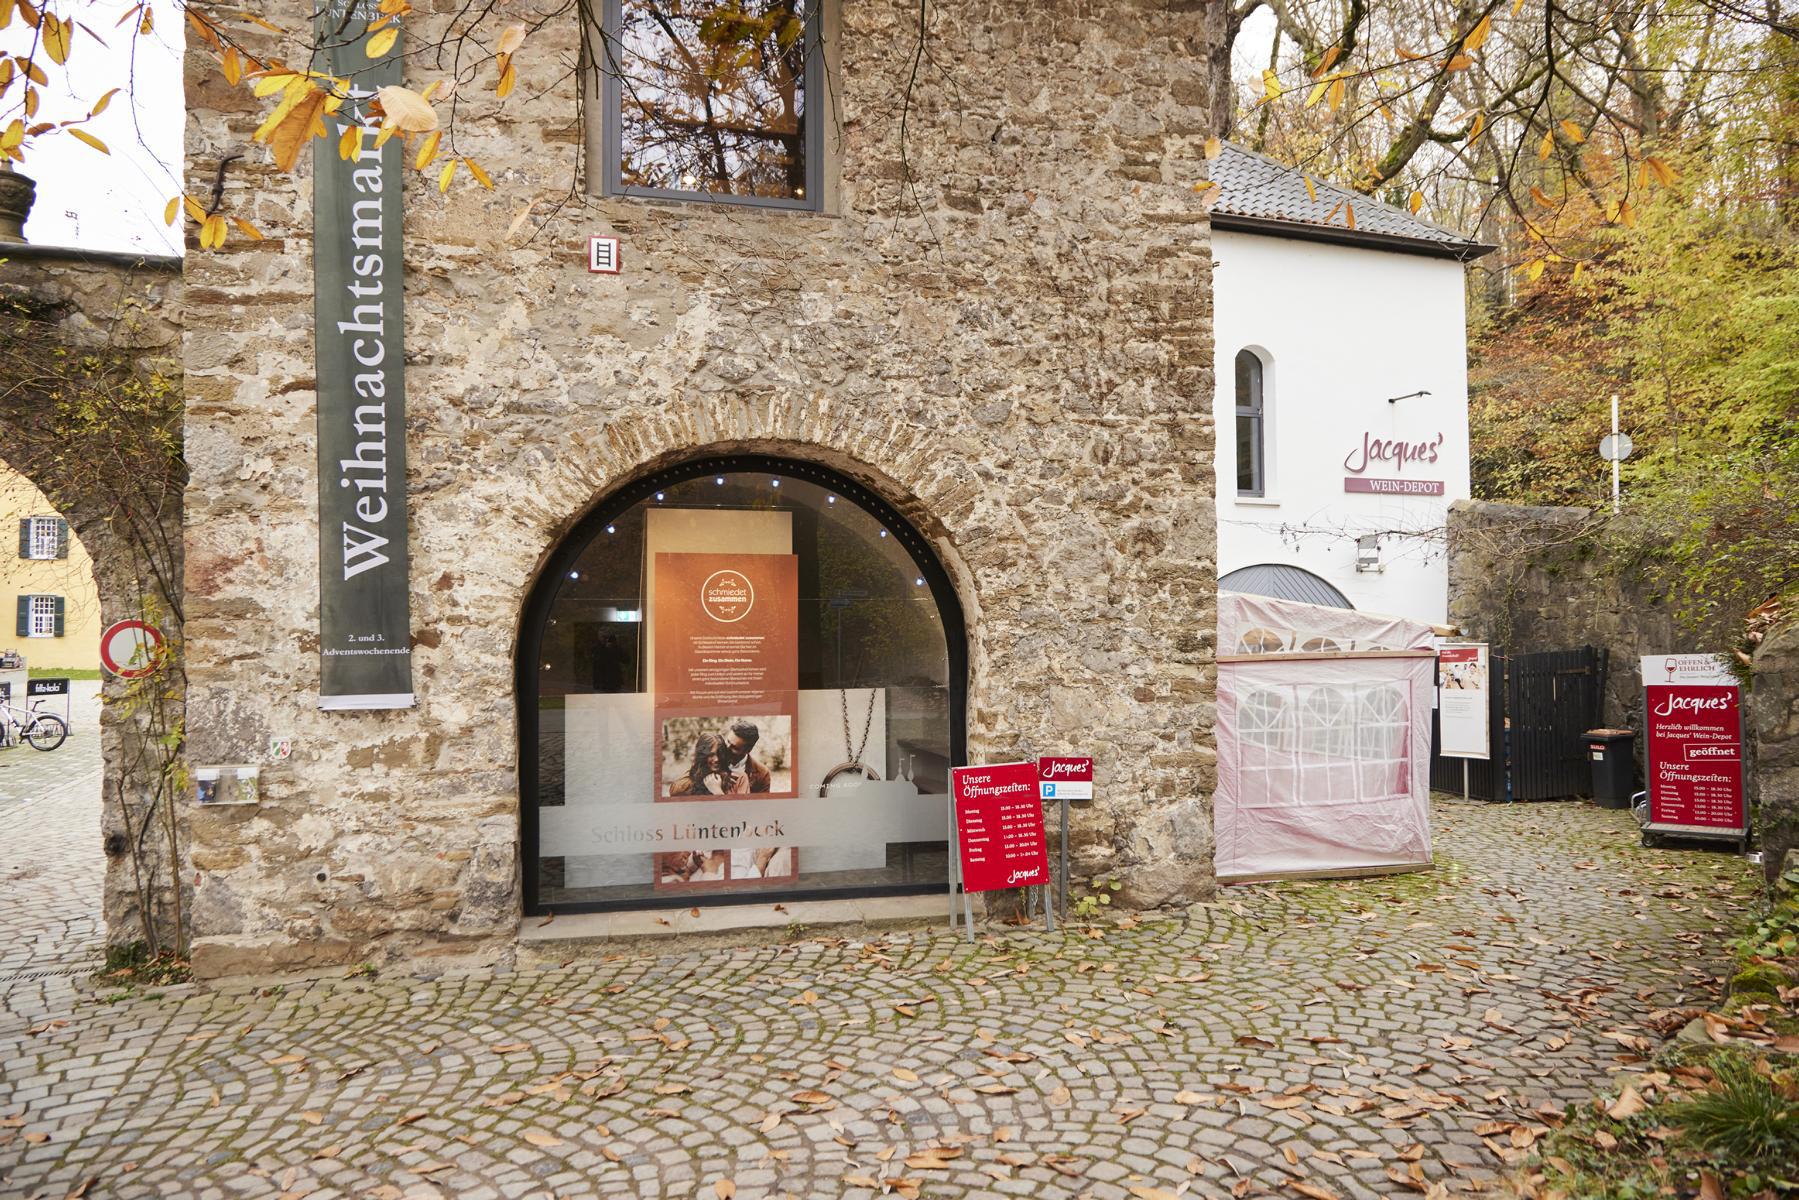 Bilder Jacques’ Wein-Depot Wuppertal-Vohwinkel